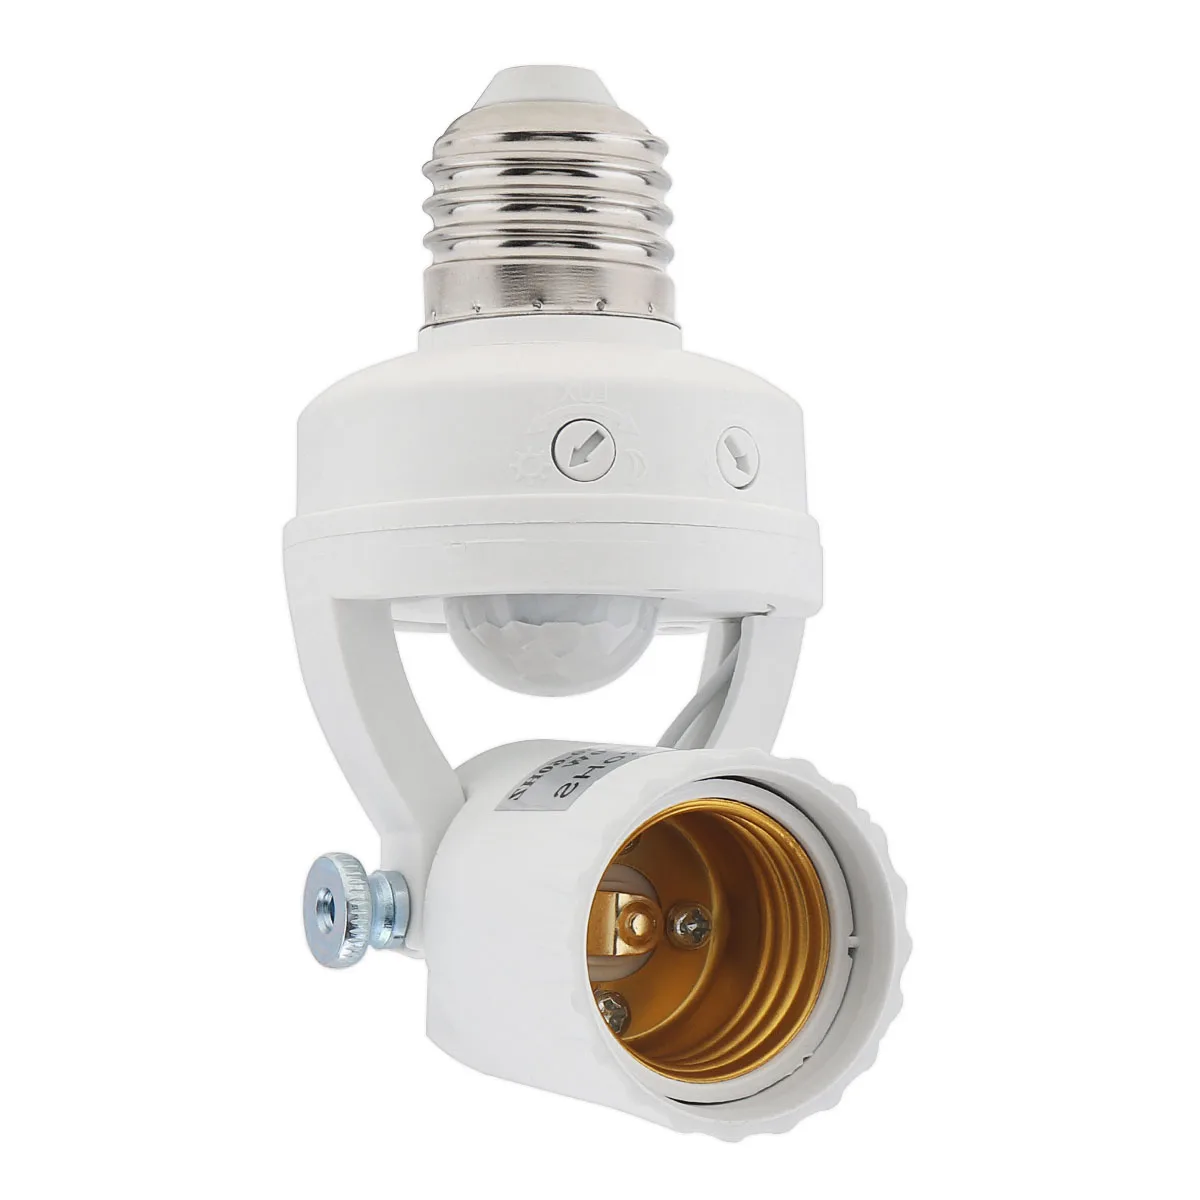 

PIR Motion Sensor Light Socket 180Degree Rotatable Smart Screw Bulb Holder Adapter for Garage Basement Porch Laundry Room Closet